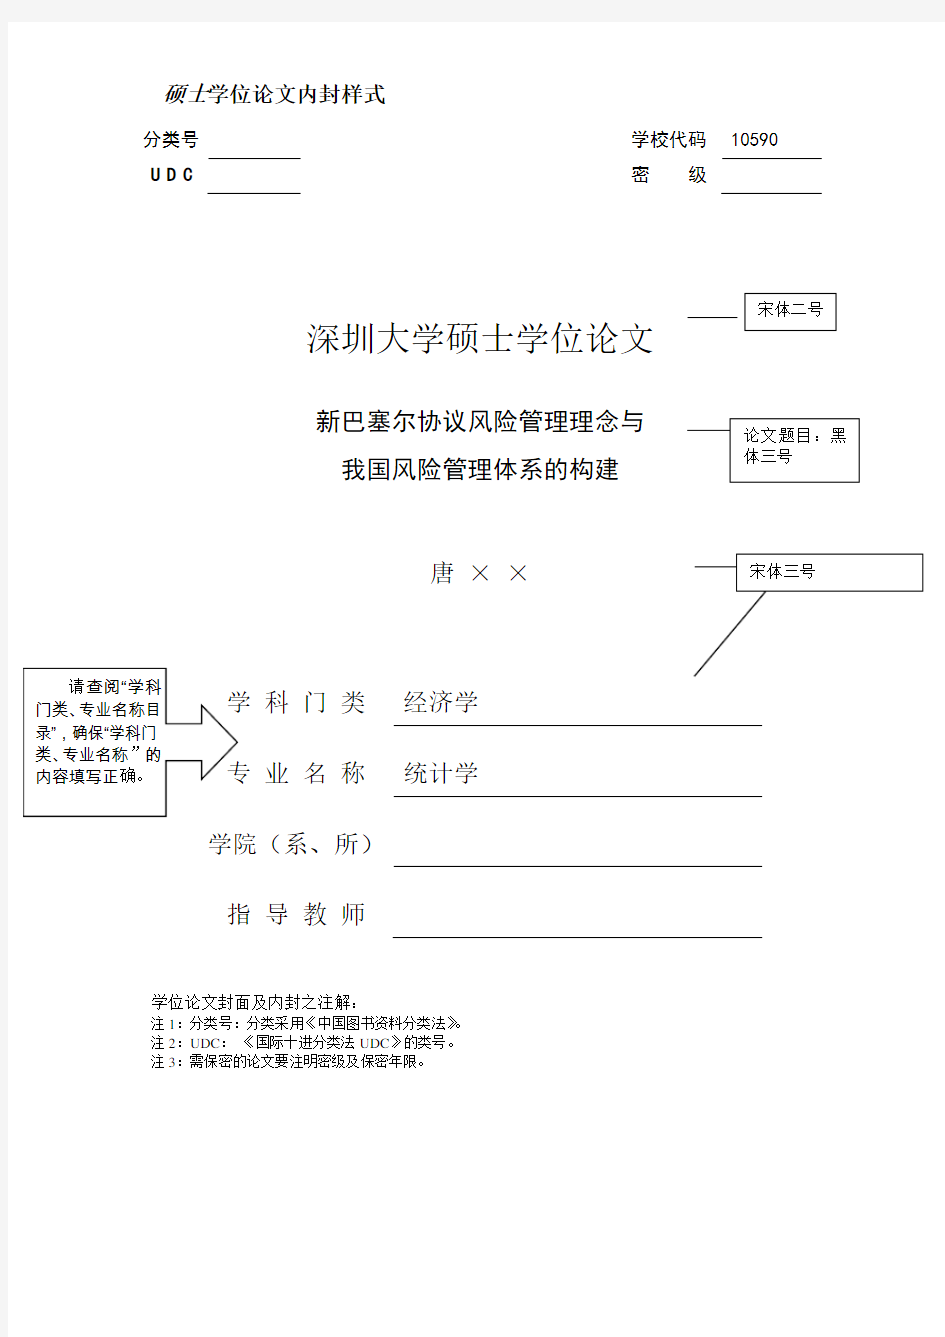 深圳大学硕士学位论文格式要求